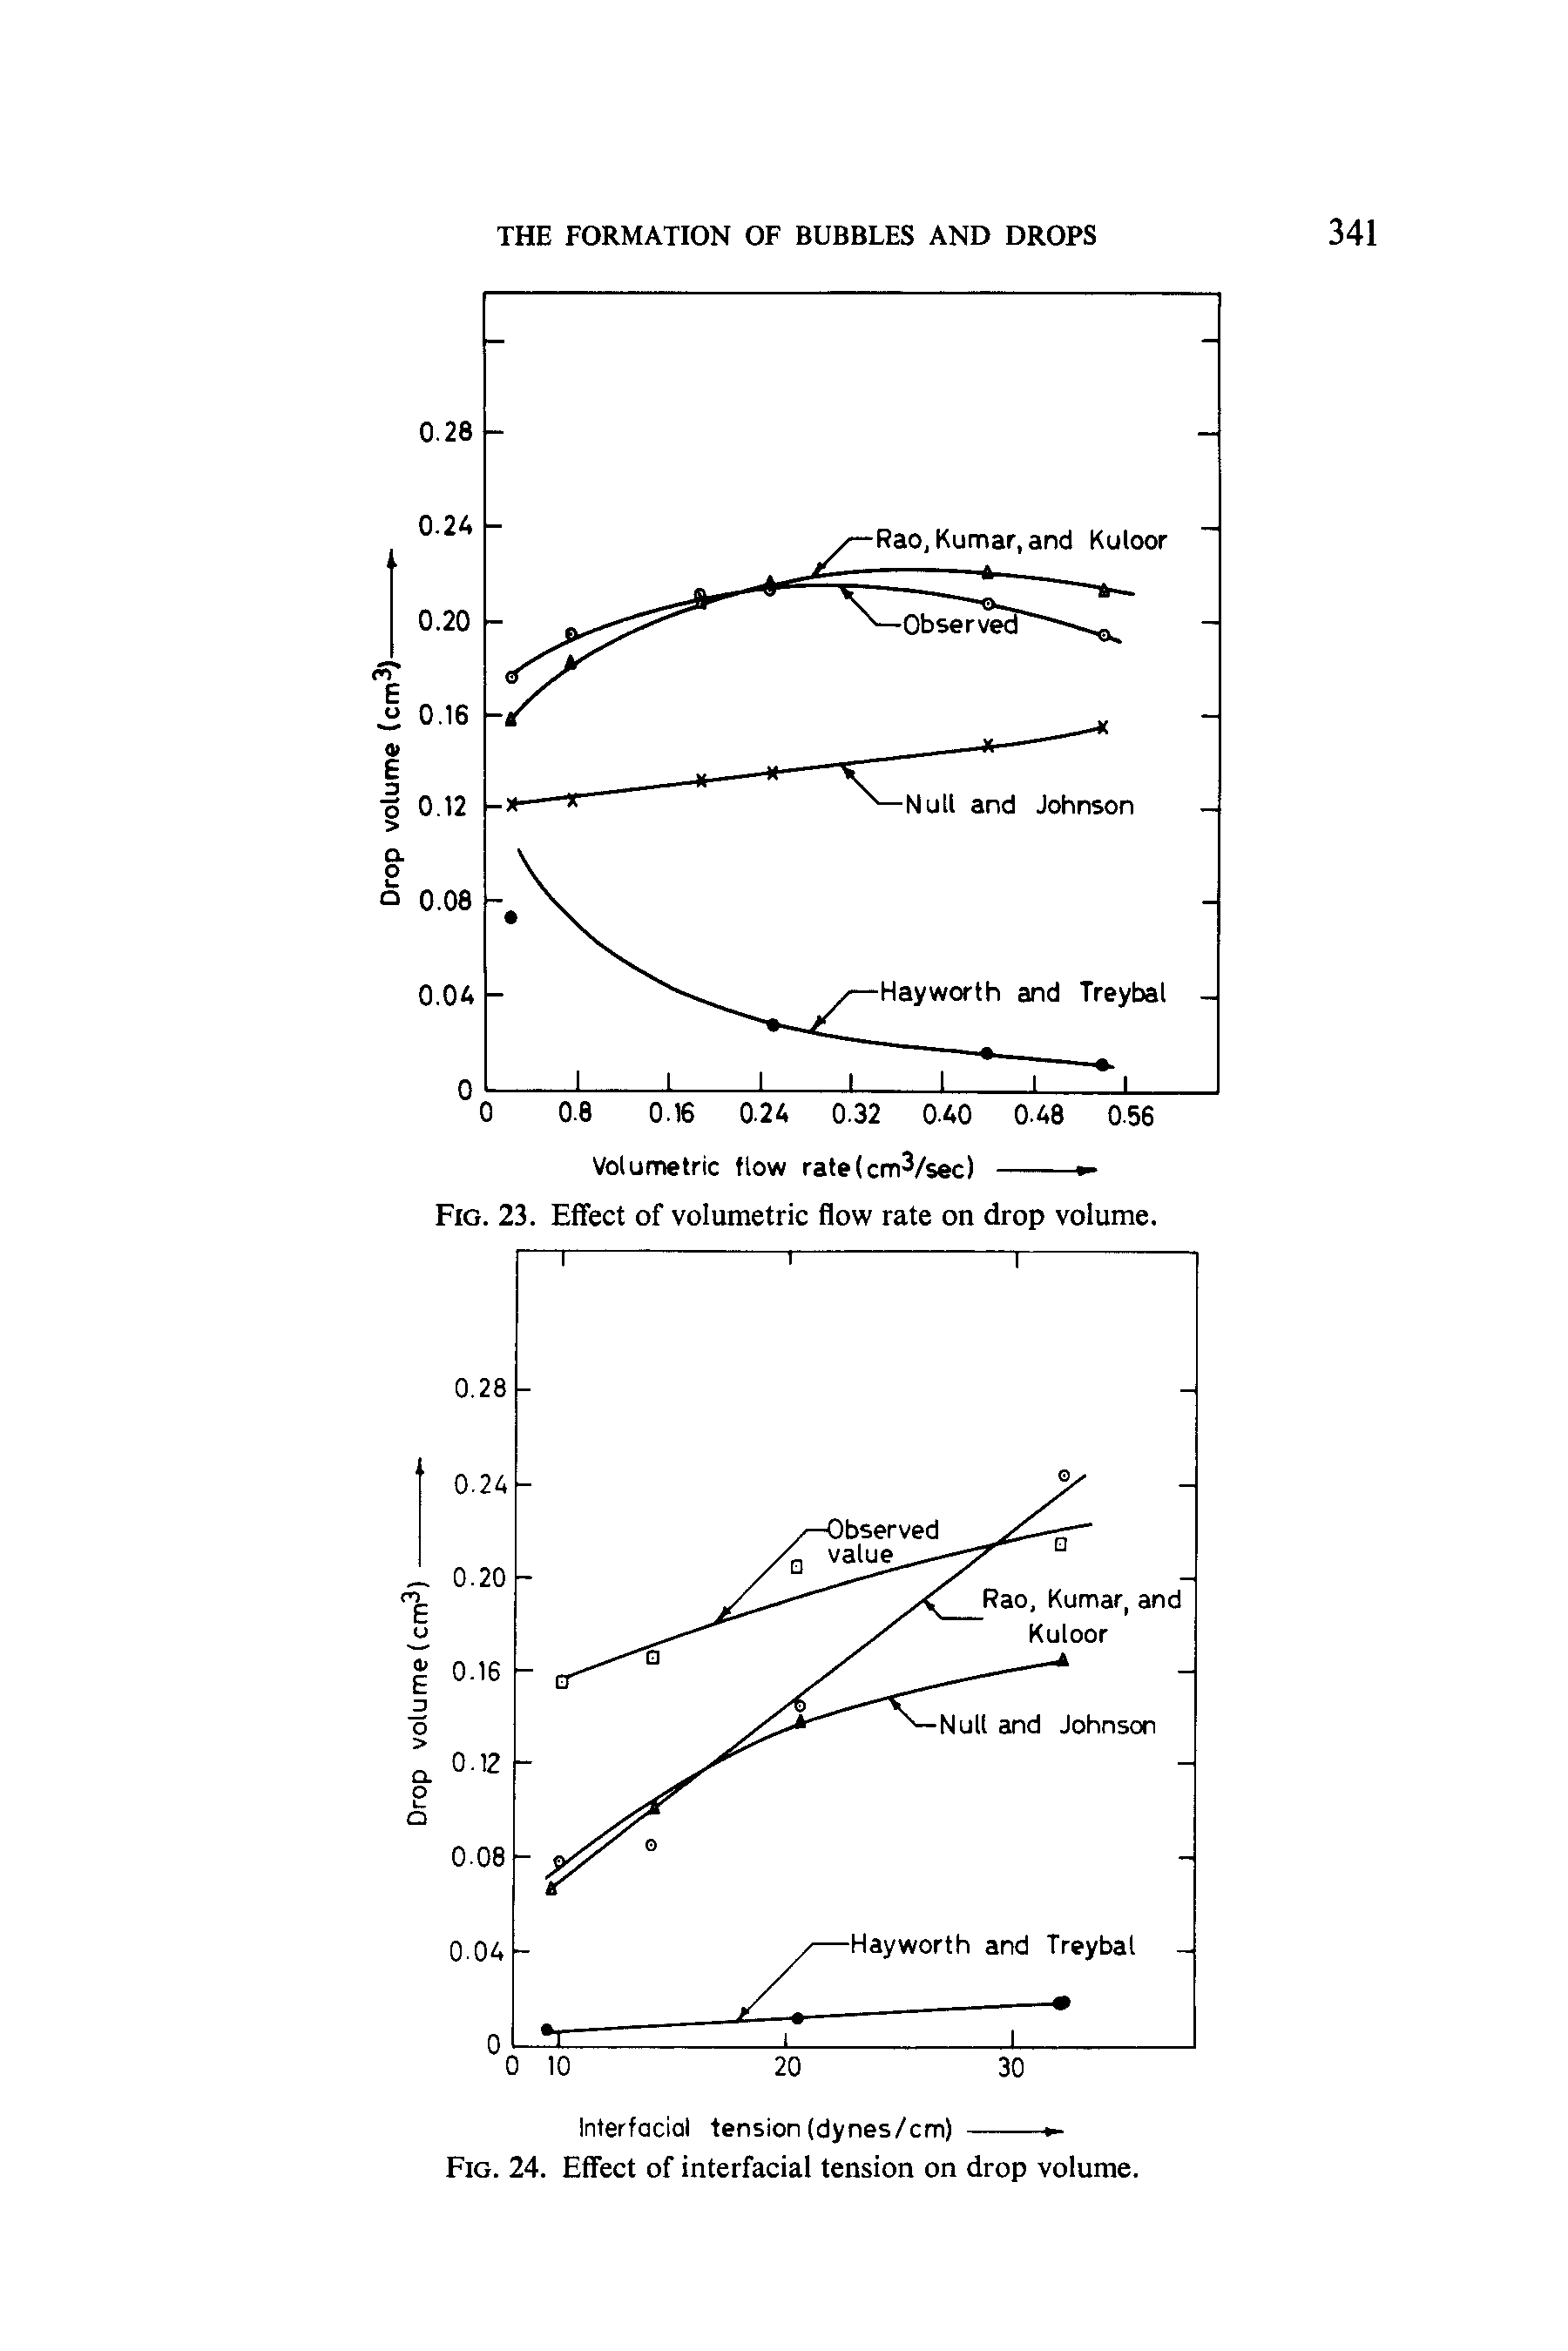 Fig. 23. Effect of volumetric flow rate on drop volume.